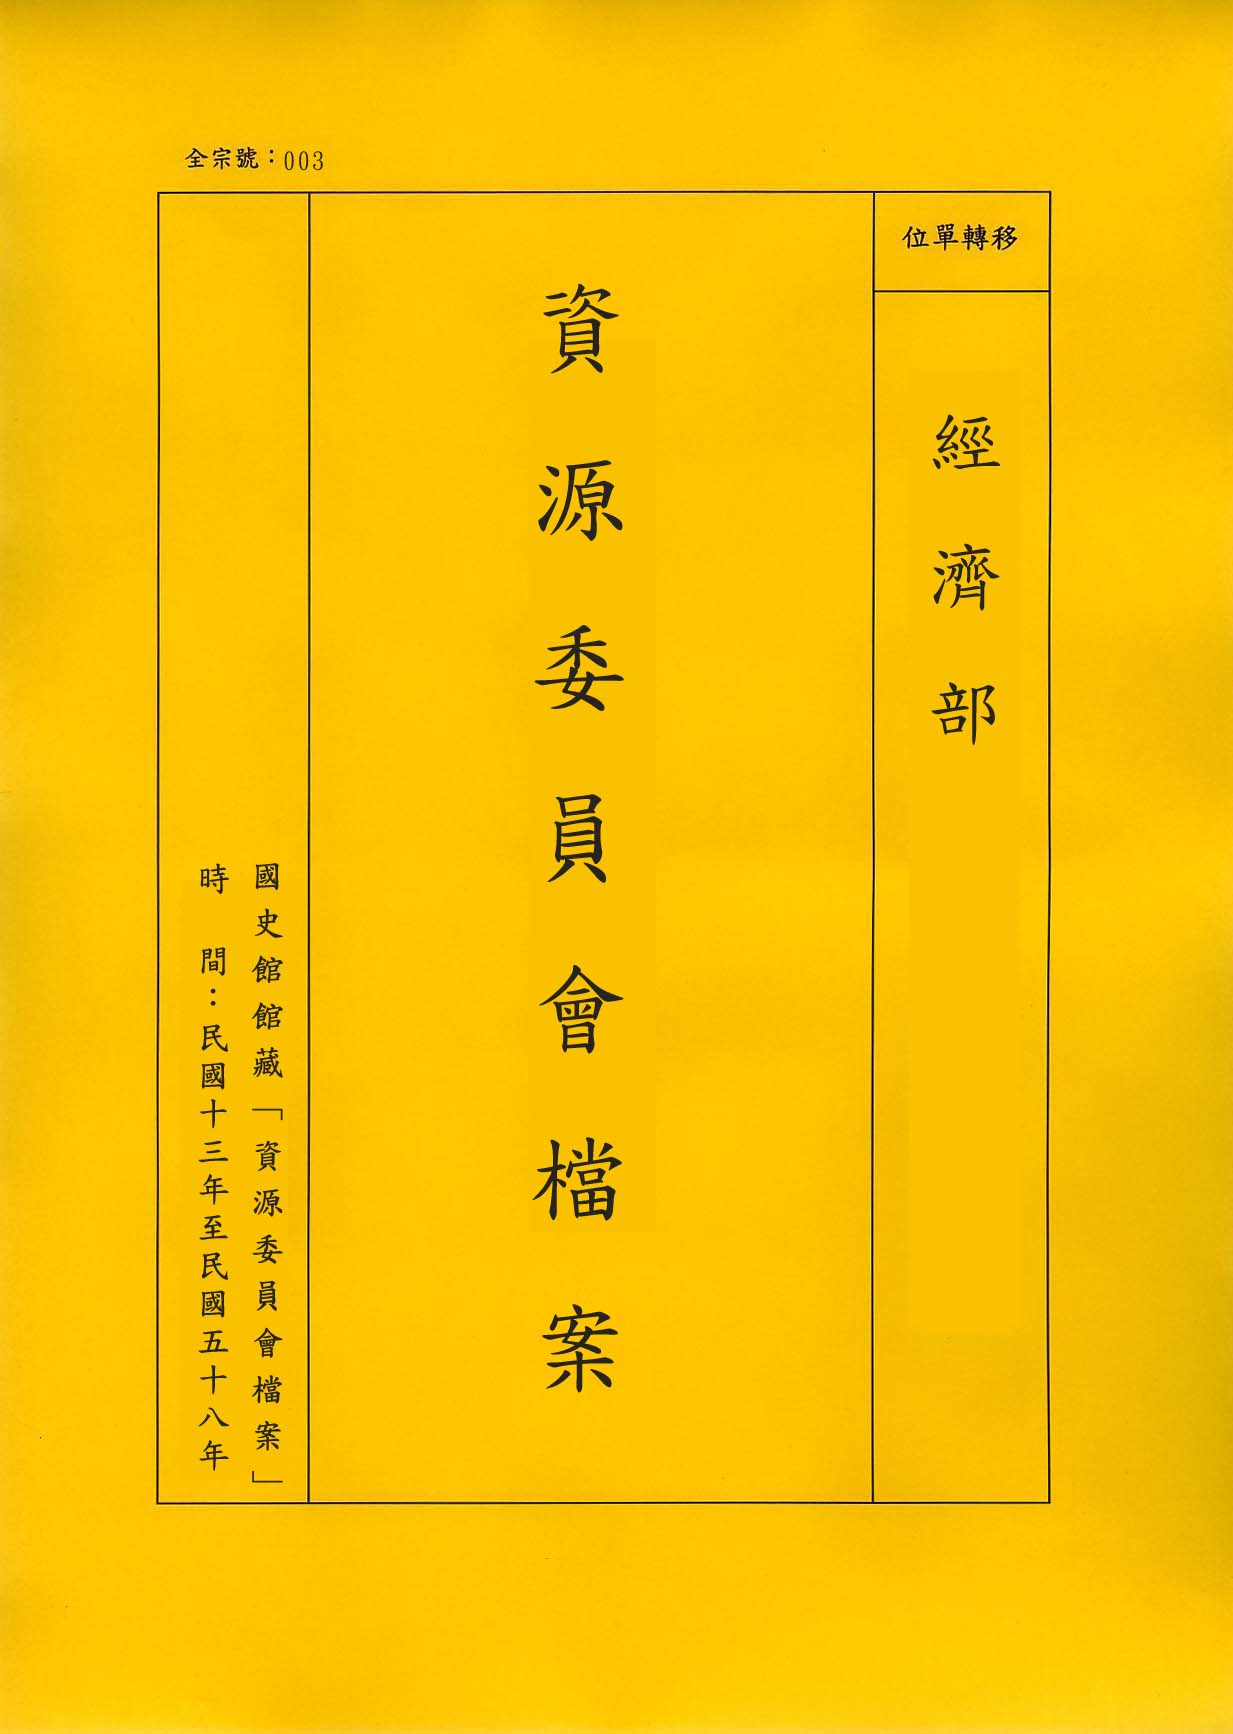 卷名:長江三峽水利開發計畫(七)(003-020200-0688)